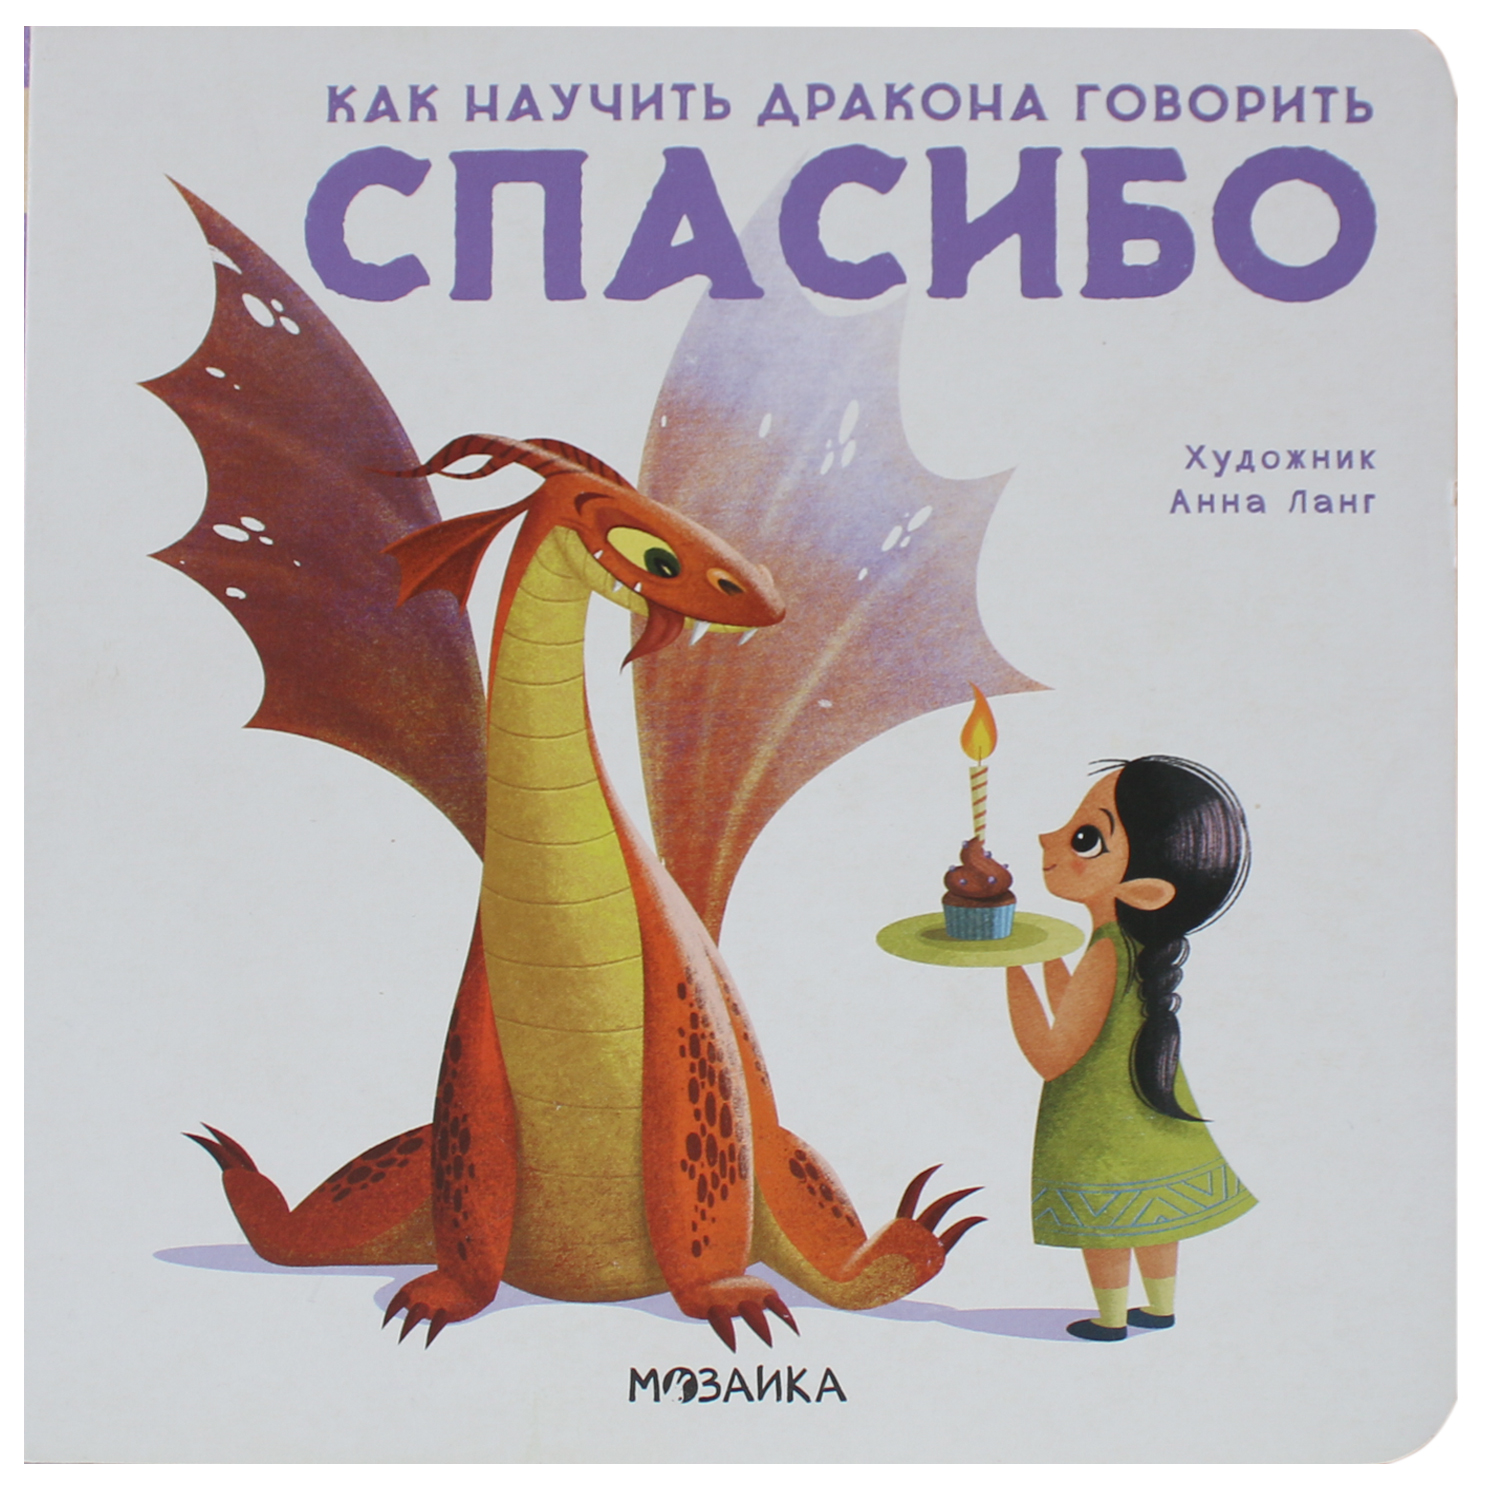 Книга МОЗАИКА kids Как научить дракона говорить Спасибо - фото 1